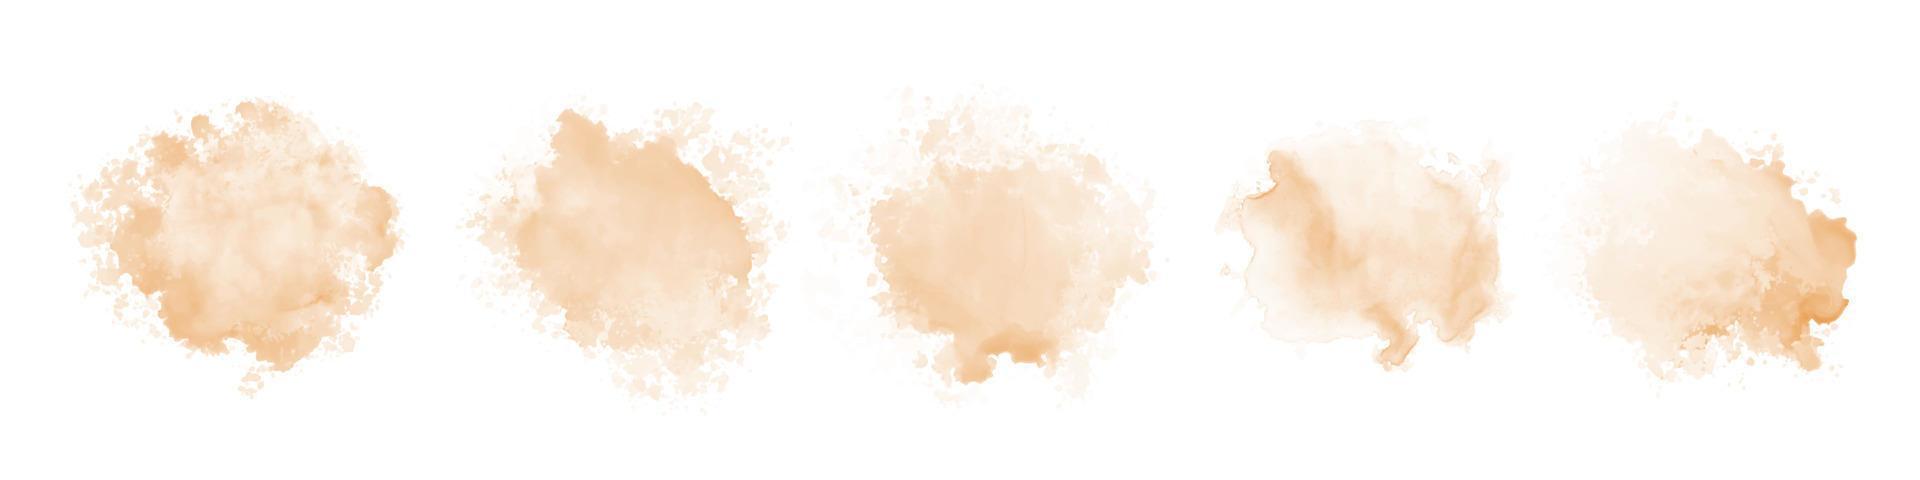 perzik waterverf plons Aan wit achtergrond. vector bruin waterverf textuur. inkt verf borstel bekladden